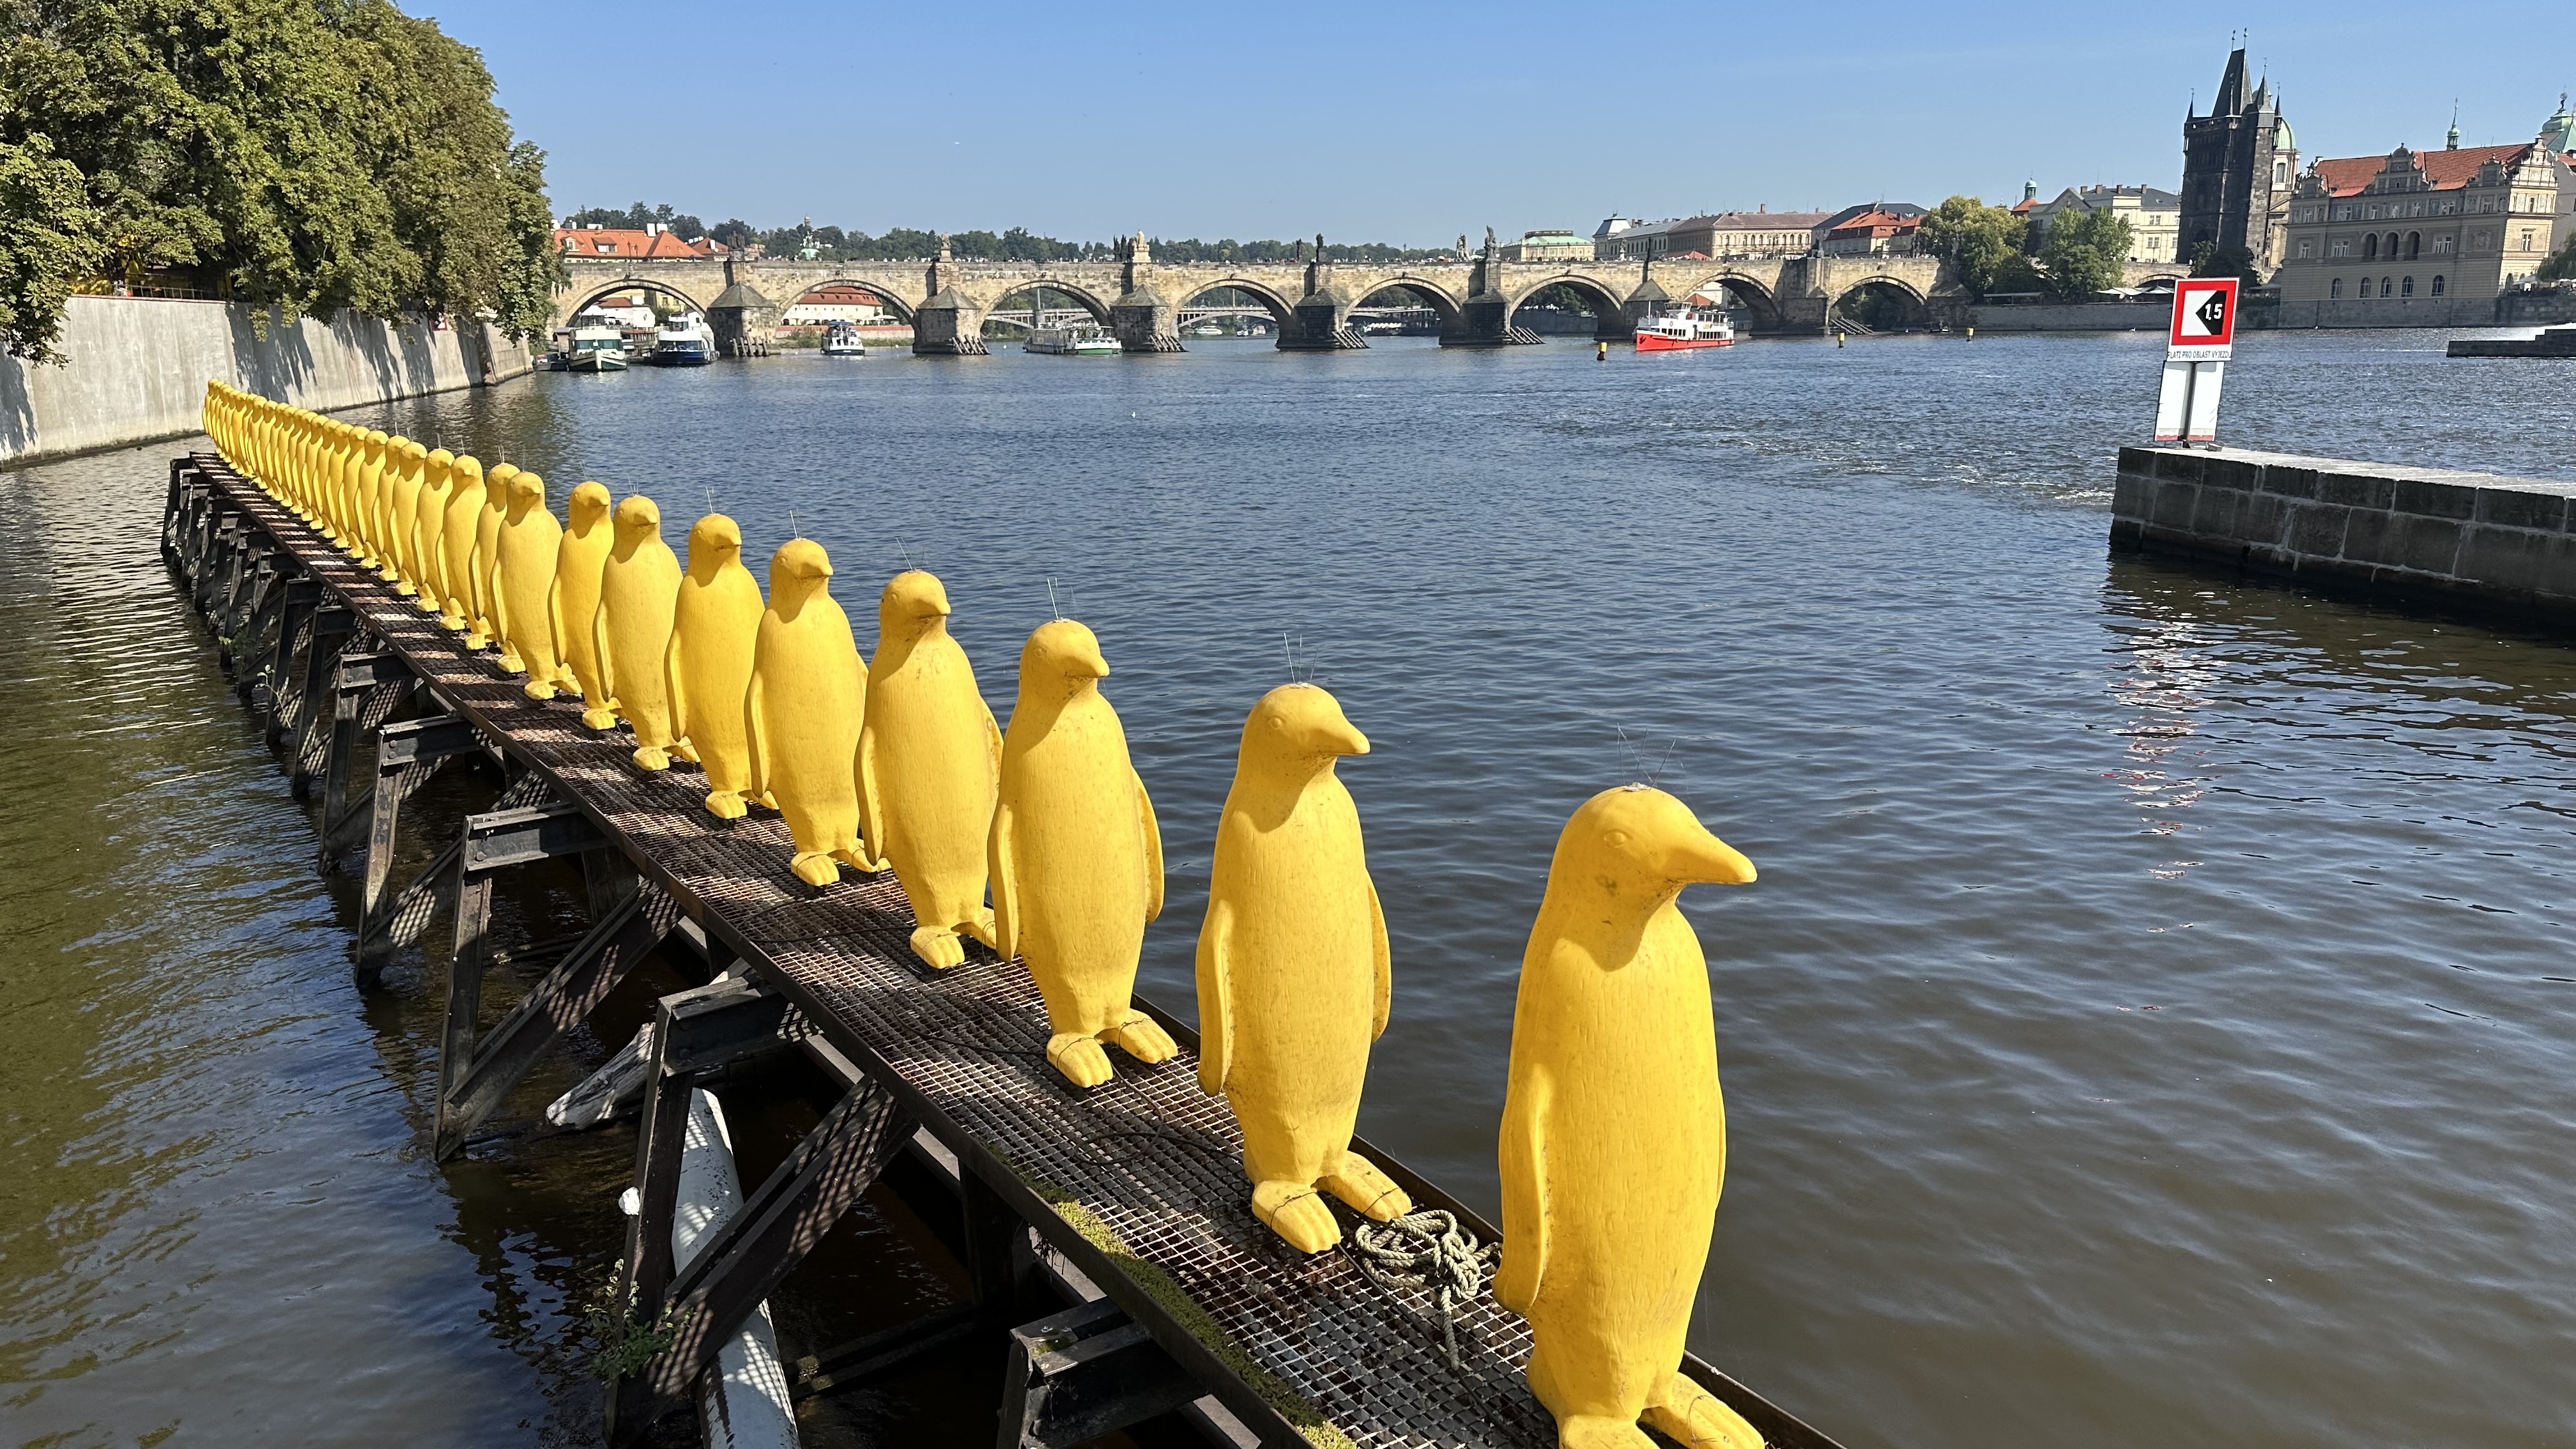 The Ultimate Prague Quiz